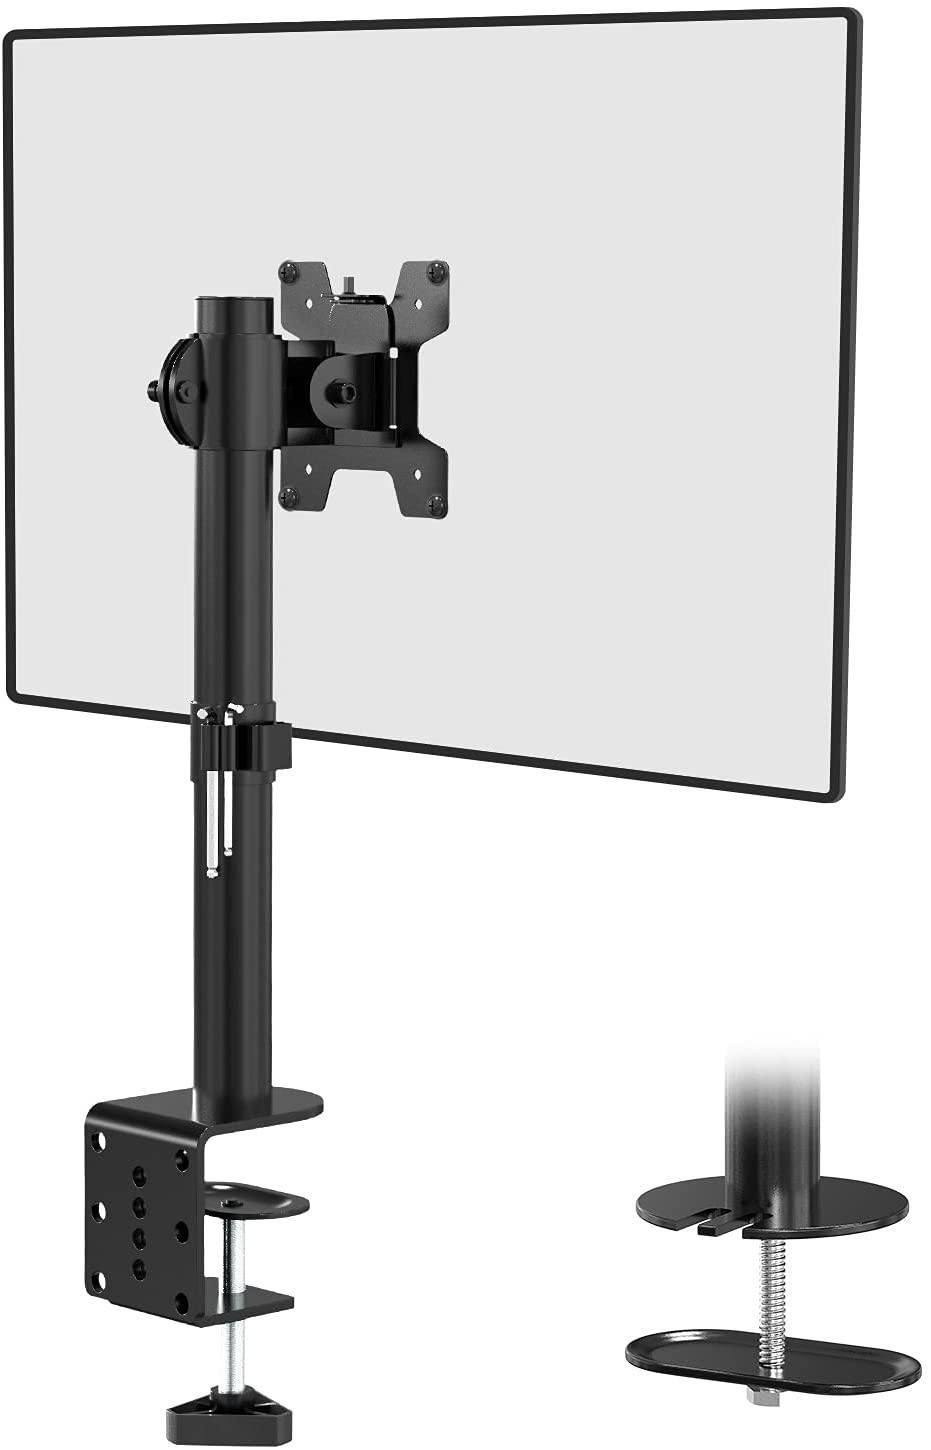 NÖRDIC Monitorarm Table Bracket for 1 Monitor 13-32 med Justerbar høyde Rotatbar og vippbar, Stål, Svart, Skjermbrakett VESA 75 og 100